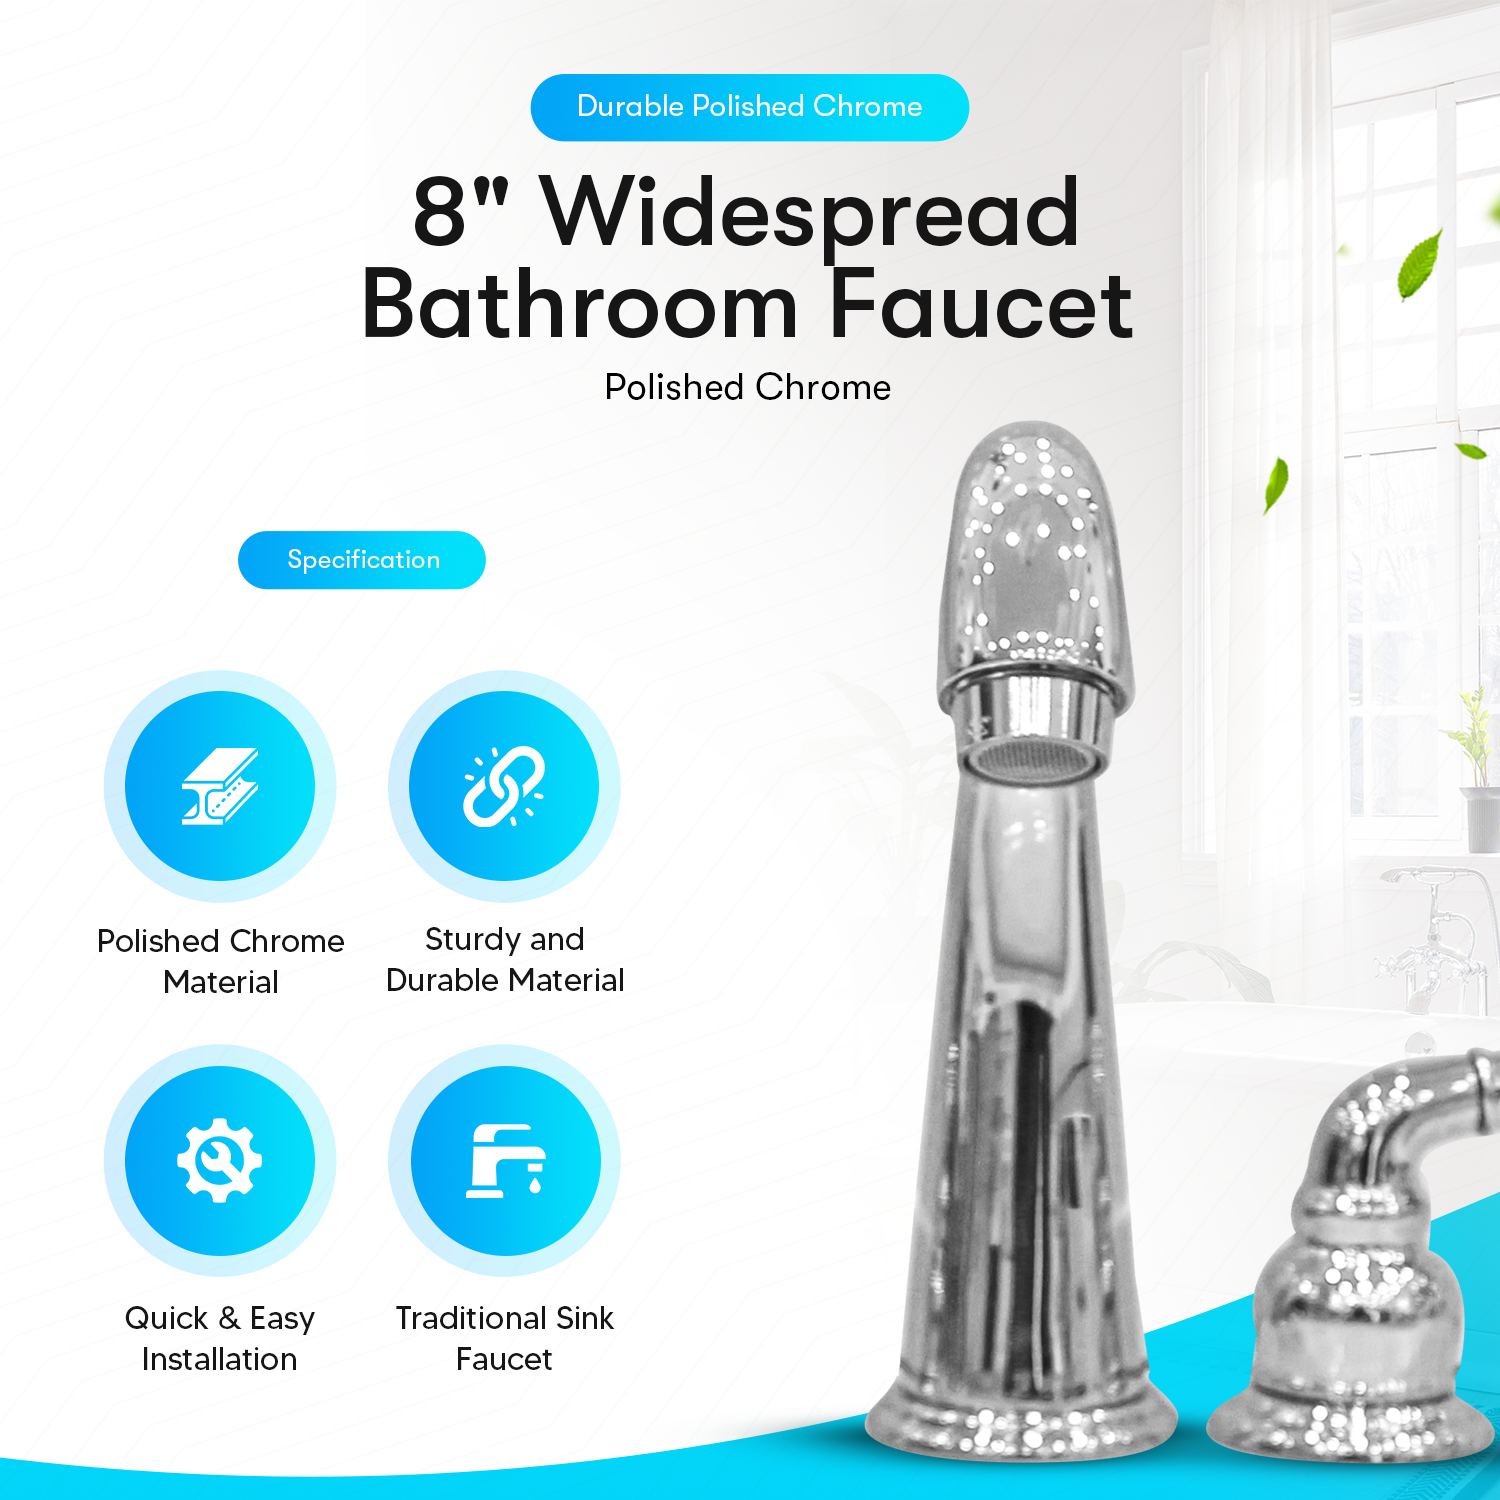 8" Widespread Bathroom Faucet